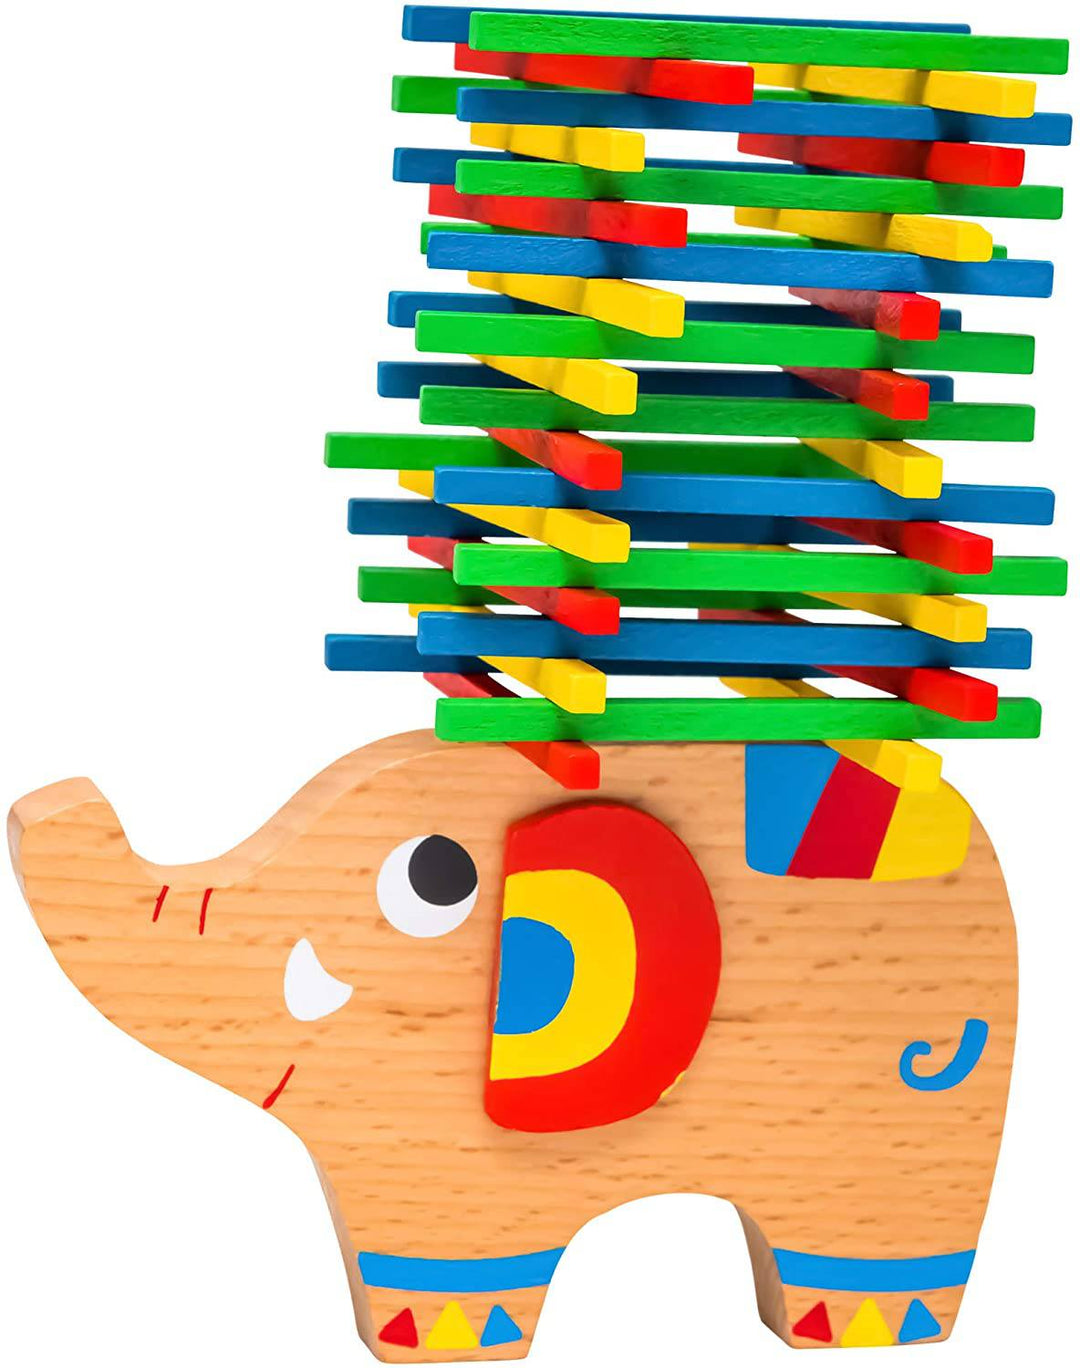 Natureich Elefant Montessori Stapel Spielzeug aus Holz zum Geschicklichkeit Lernen mit Stäbchen Bunt inkl. Stoffbeutel - Natureich